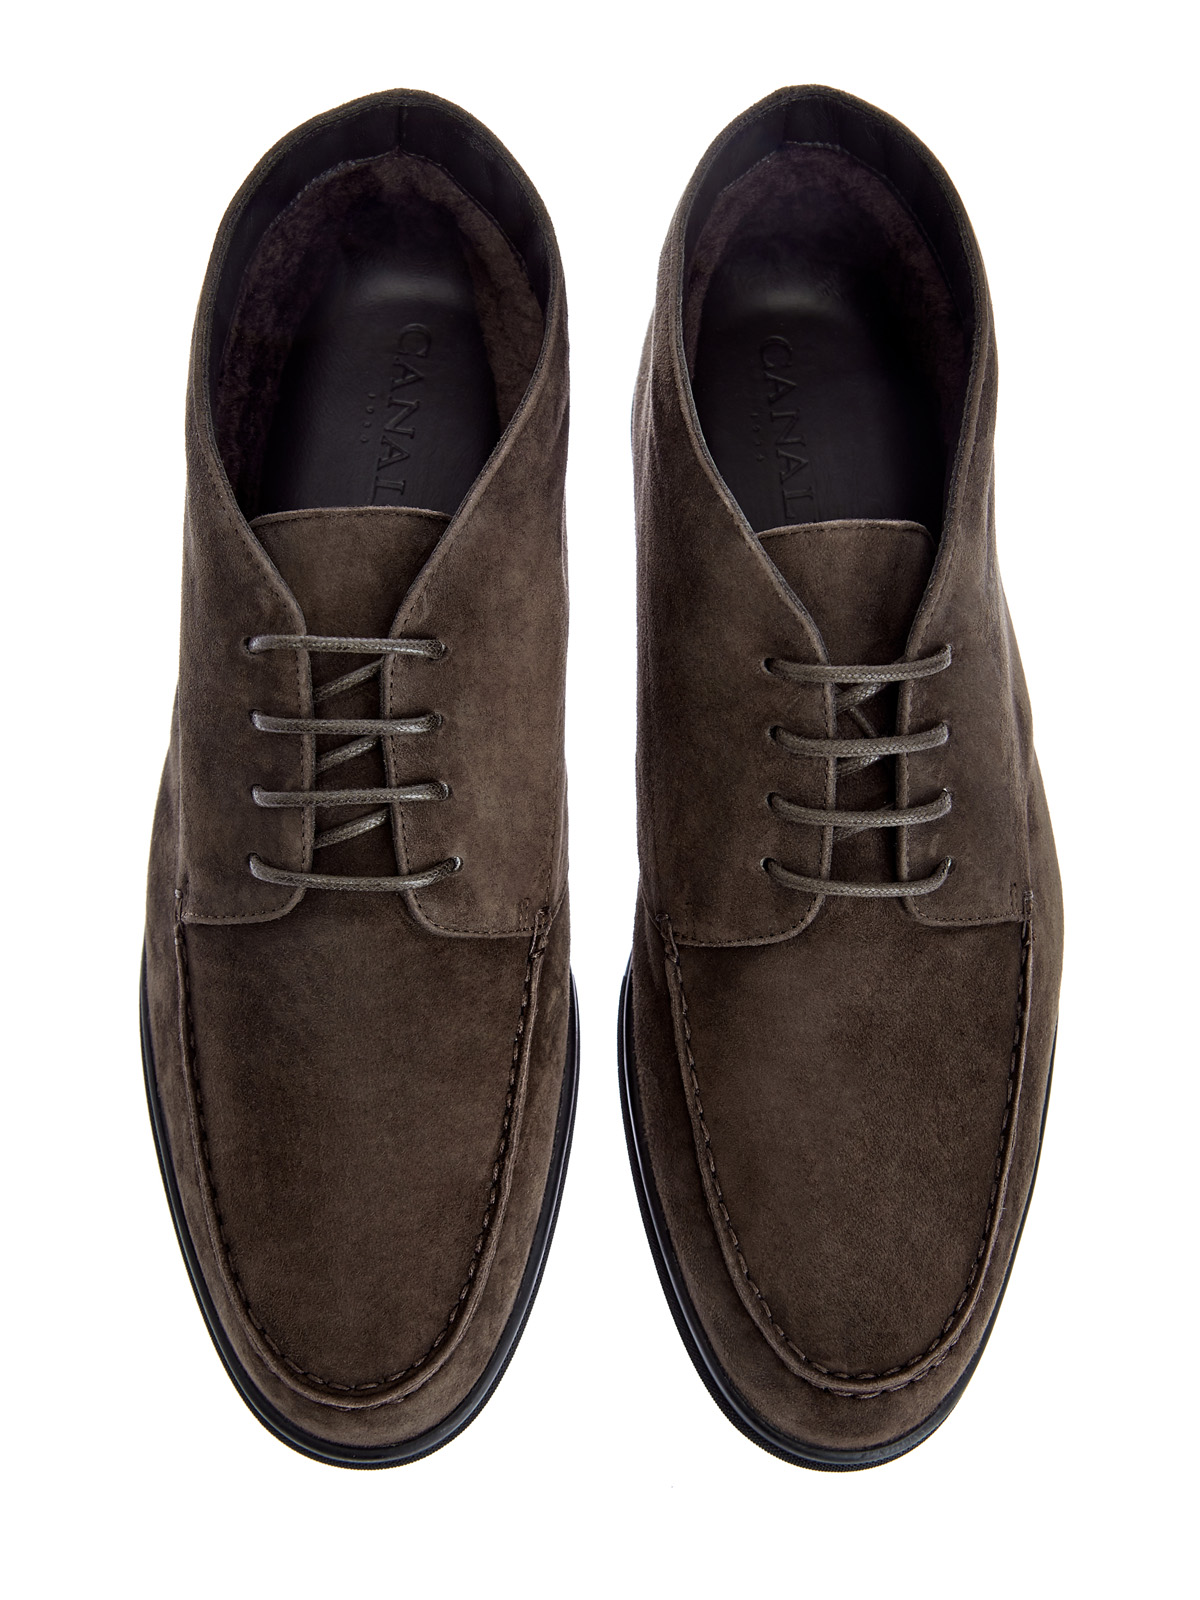 Замшевые ботинки-дерби на подкладке из овчины CANALI, цвет коричневый, размер 41;41.5;42;42.5;43;43.5;44 - фото 5